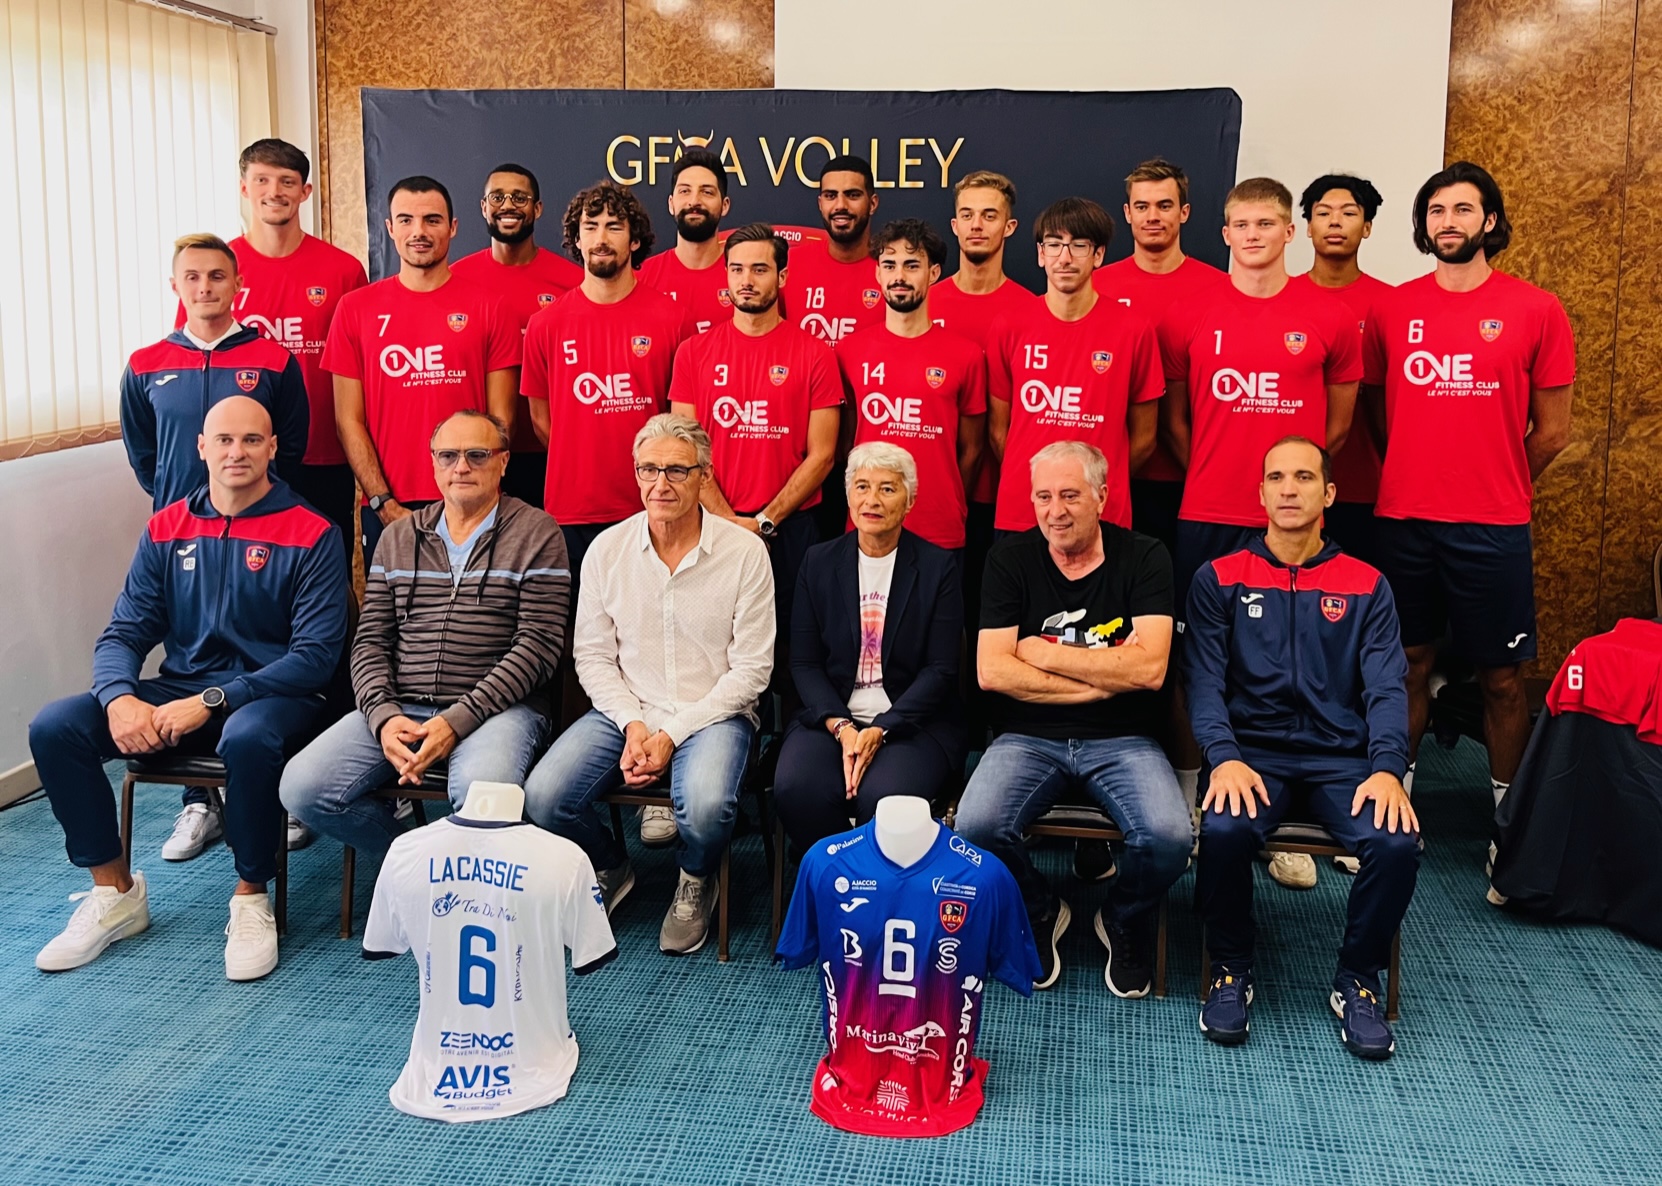 Le GFCA Volley s'est fixé des objectifs ambitieux pour la saison 2023/2024.